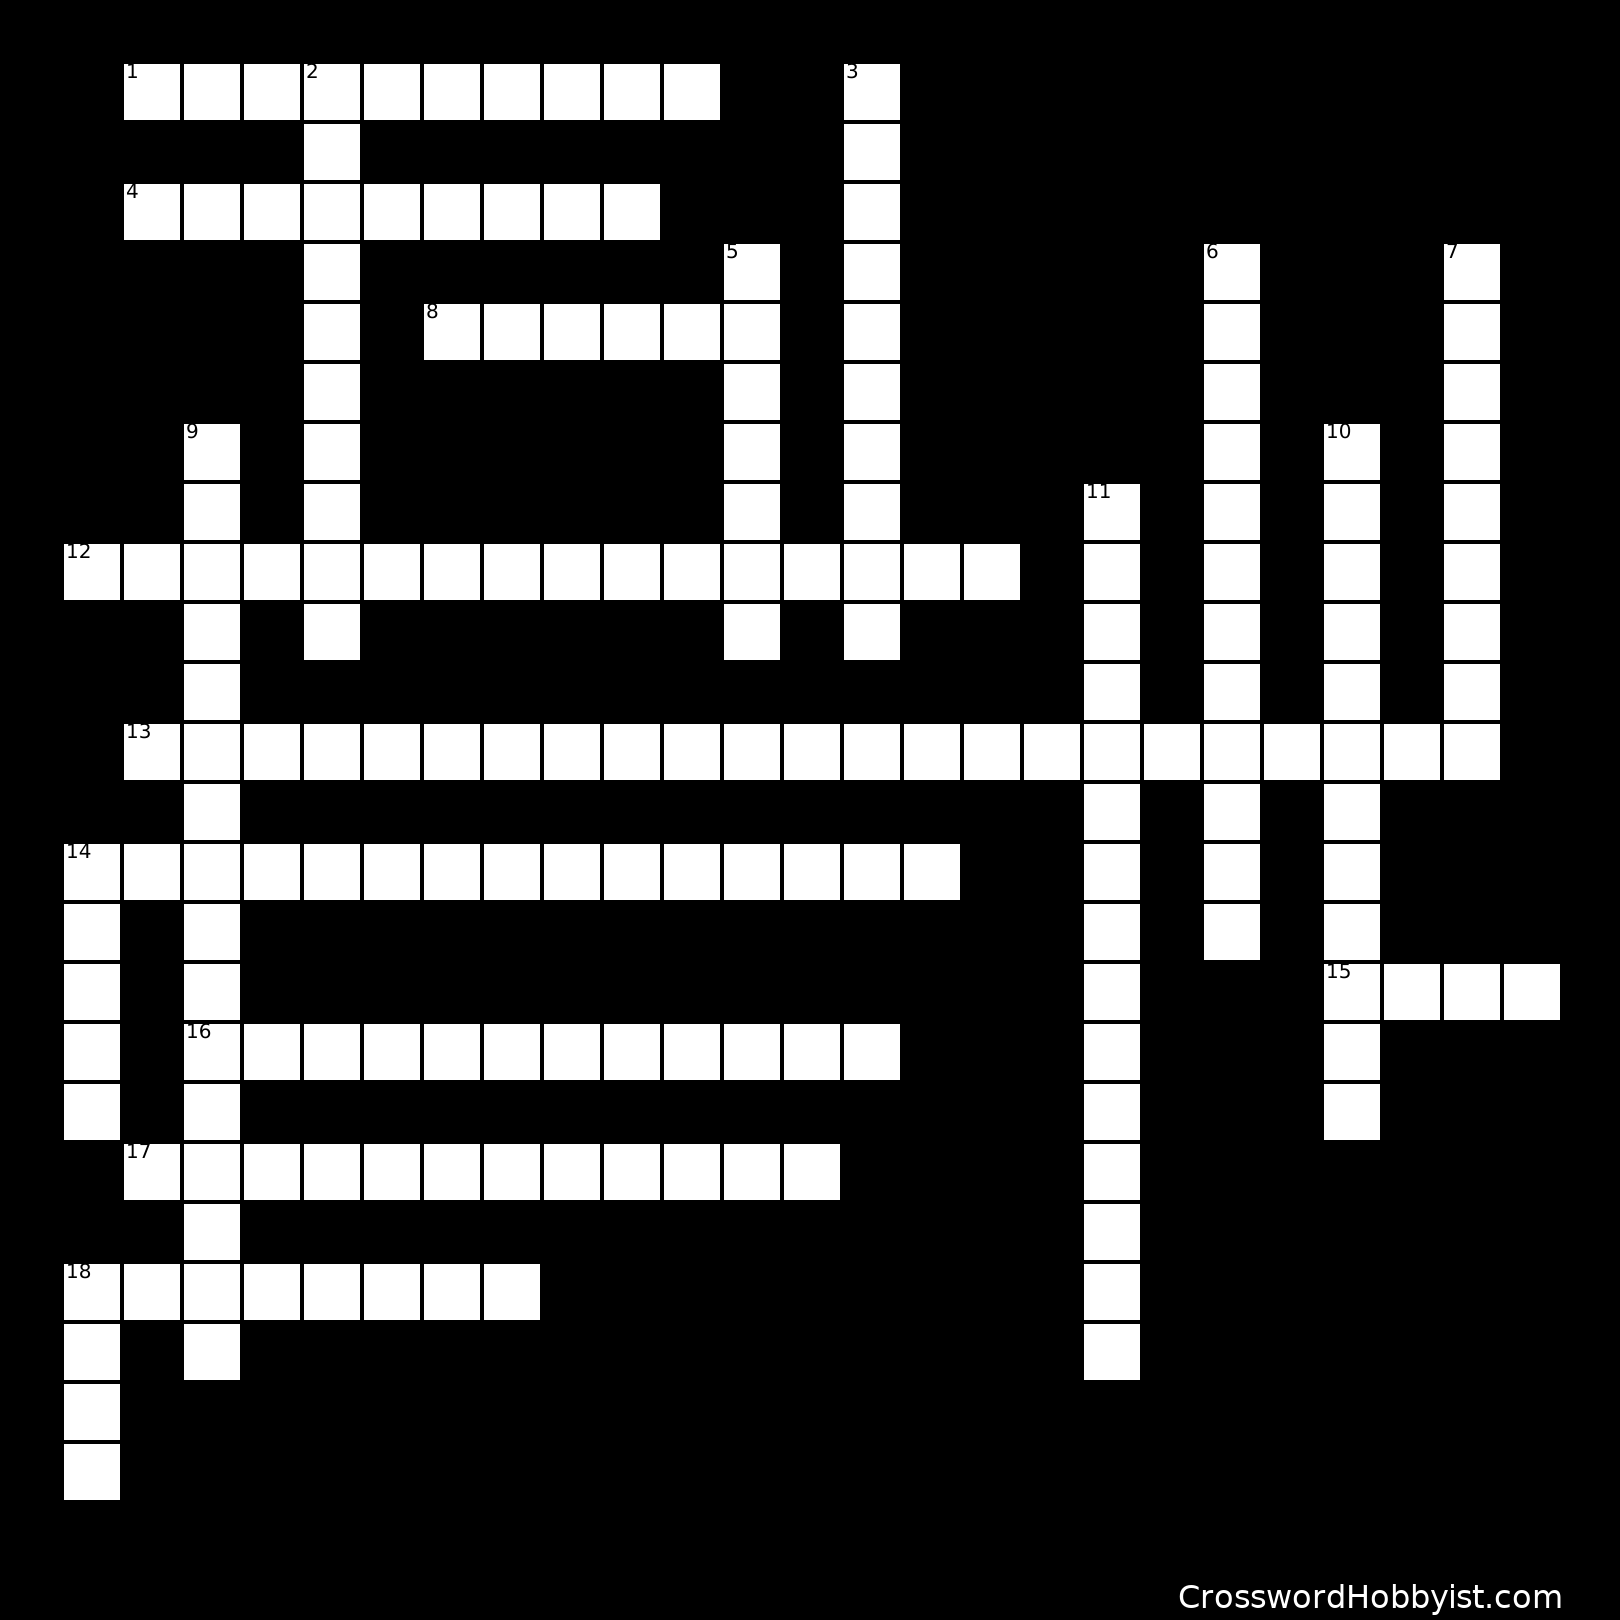 Printable Astronomy Crossword Puzzle